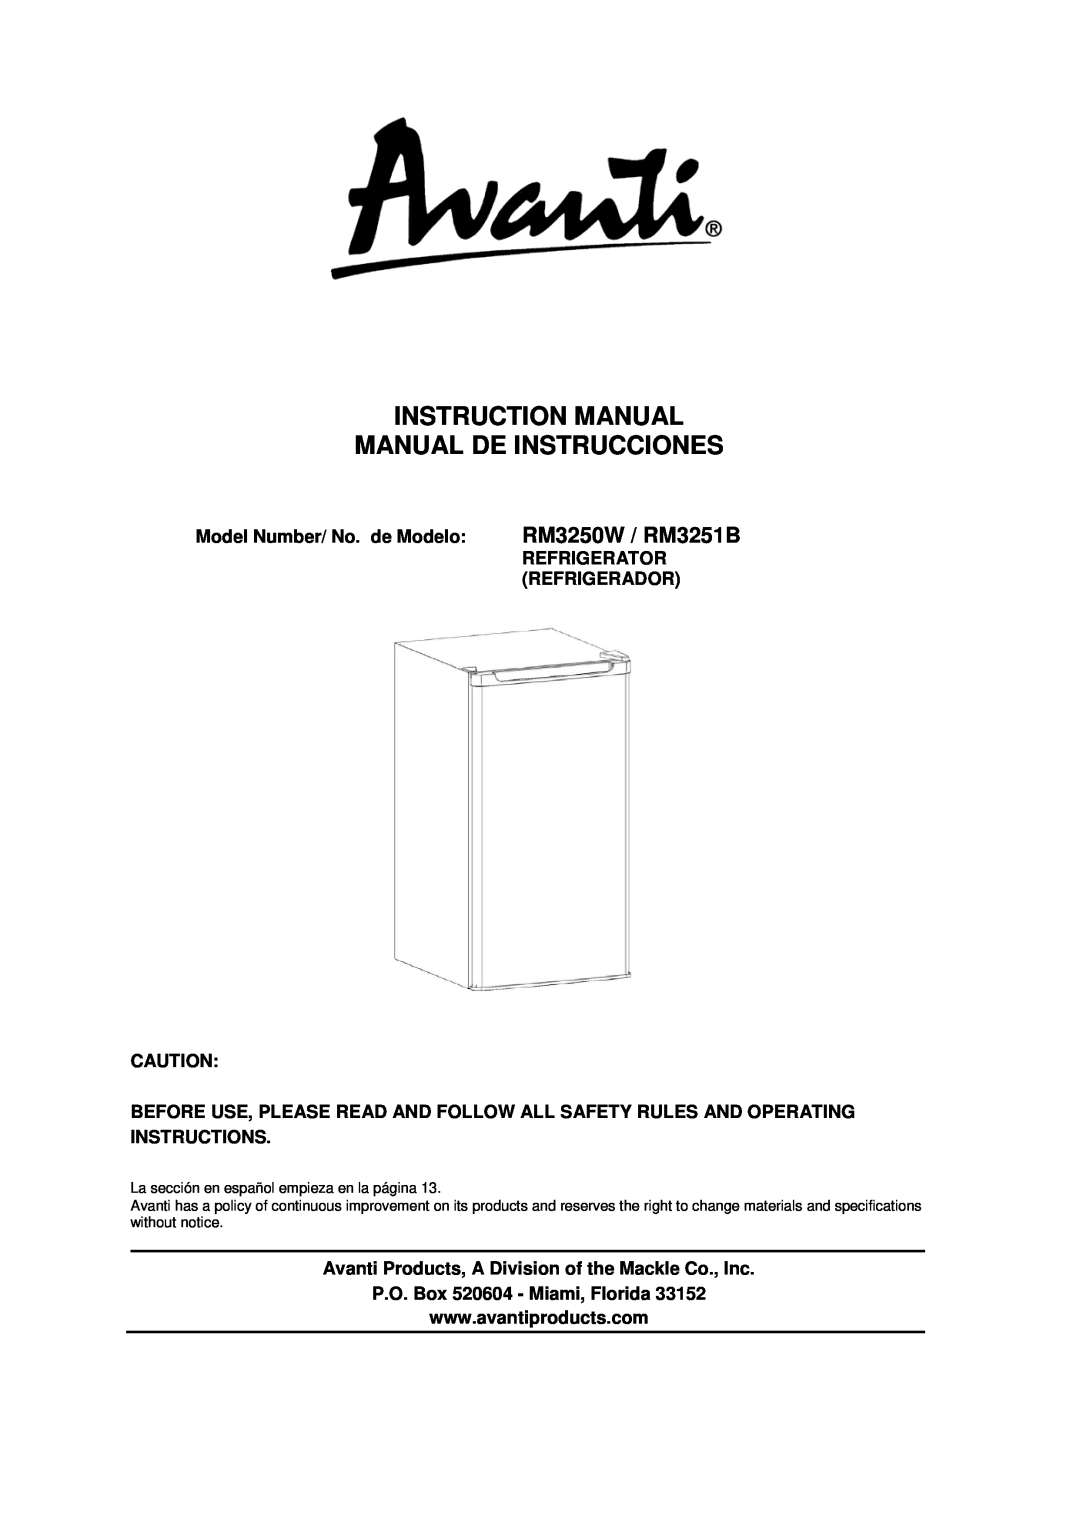 Avanti instruction manual RM3250W / RM3251B, Instruction Manual Manual De Instrucciones 